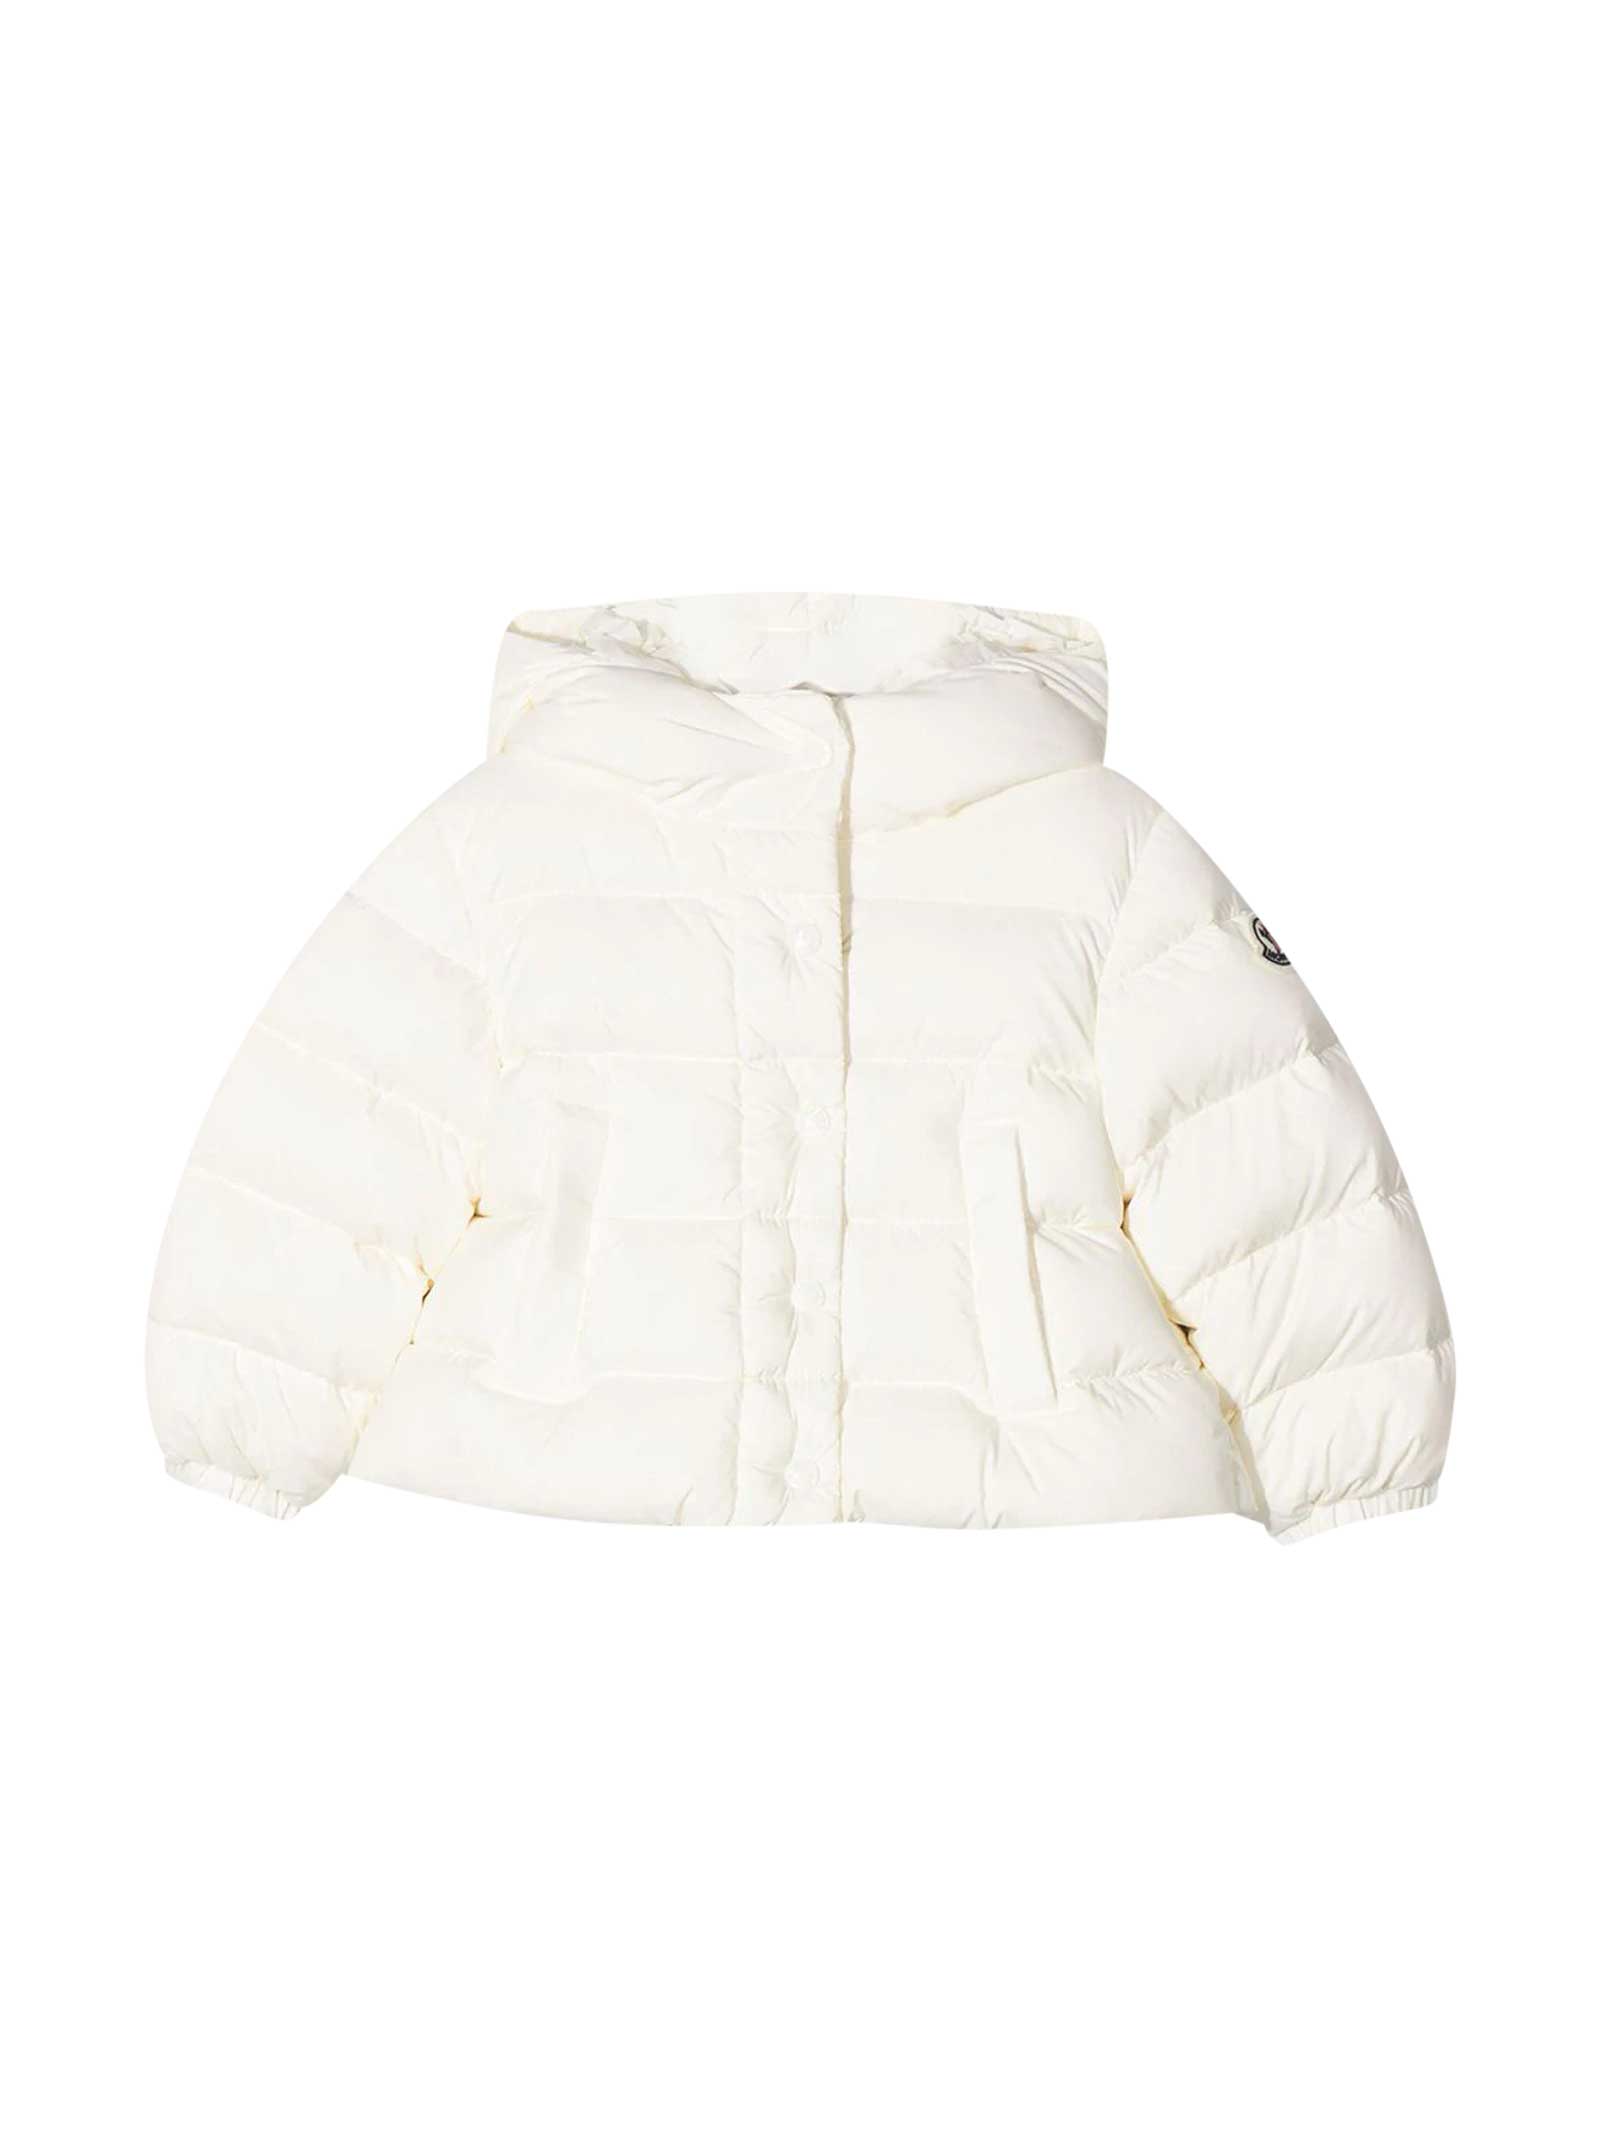 Moncler White Padded Coat